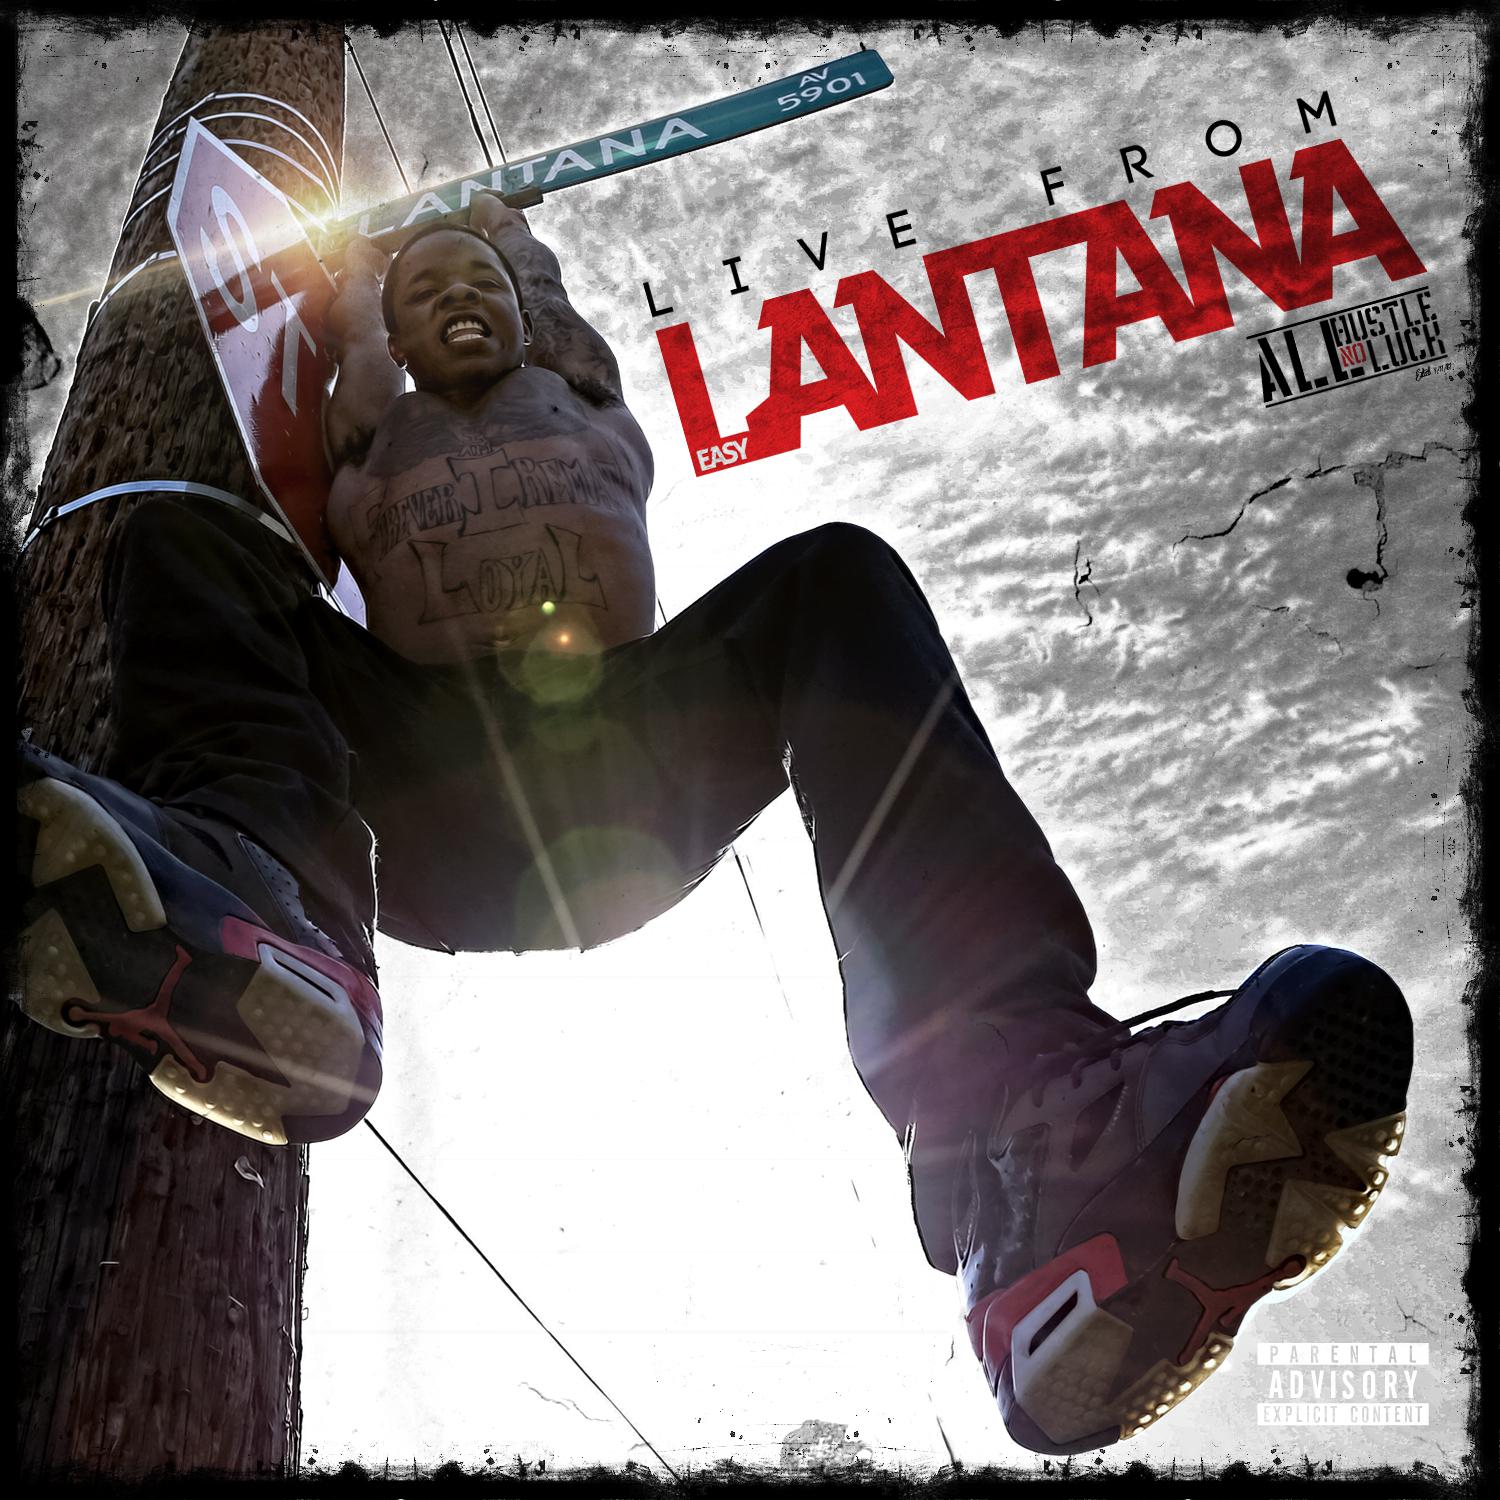 Live From Lantana